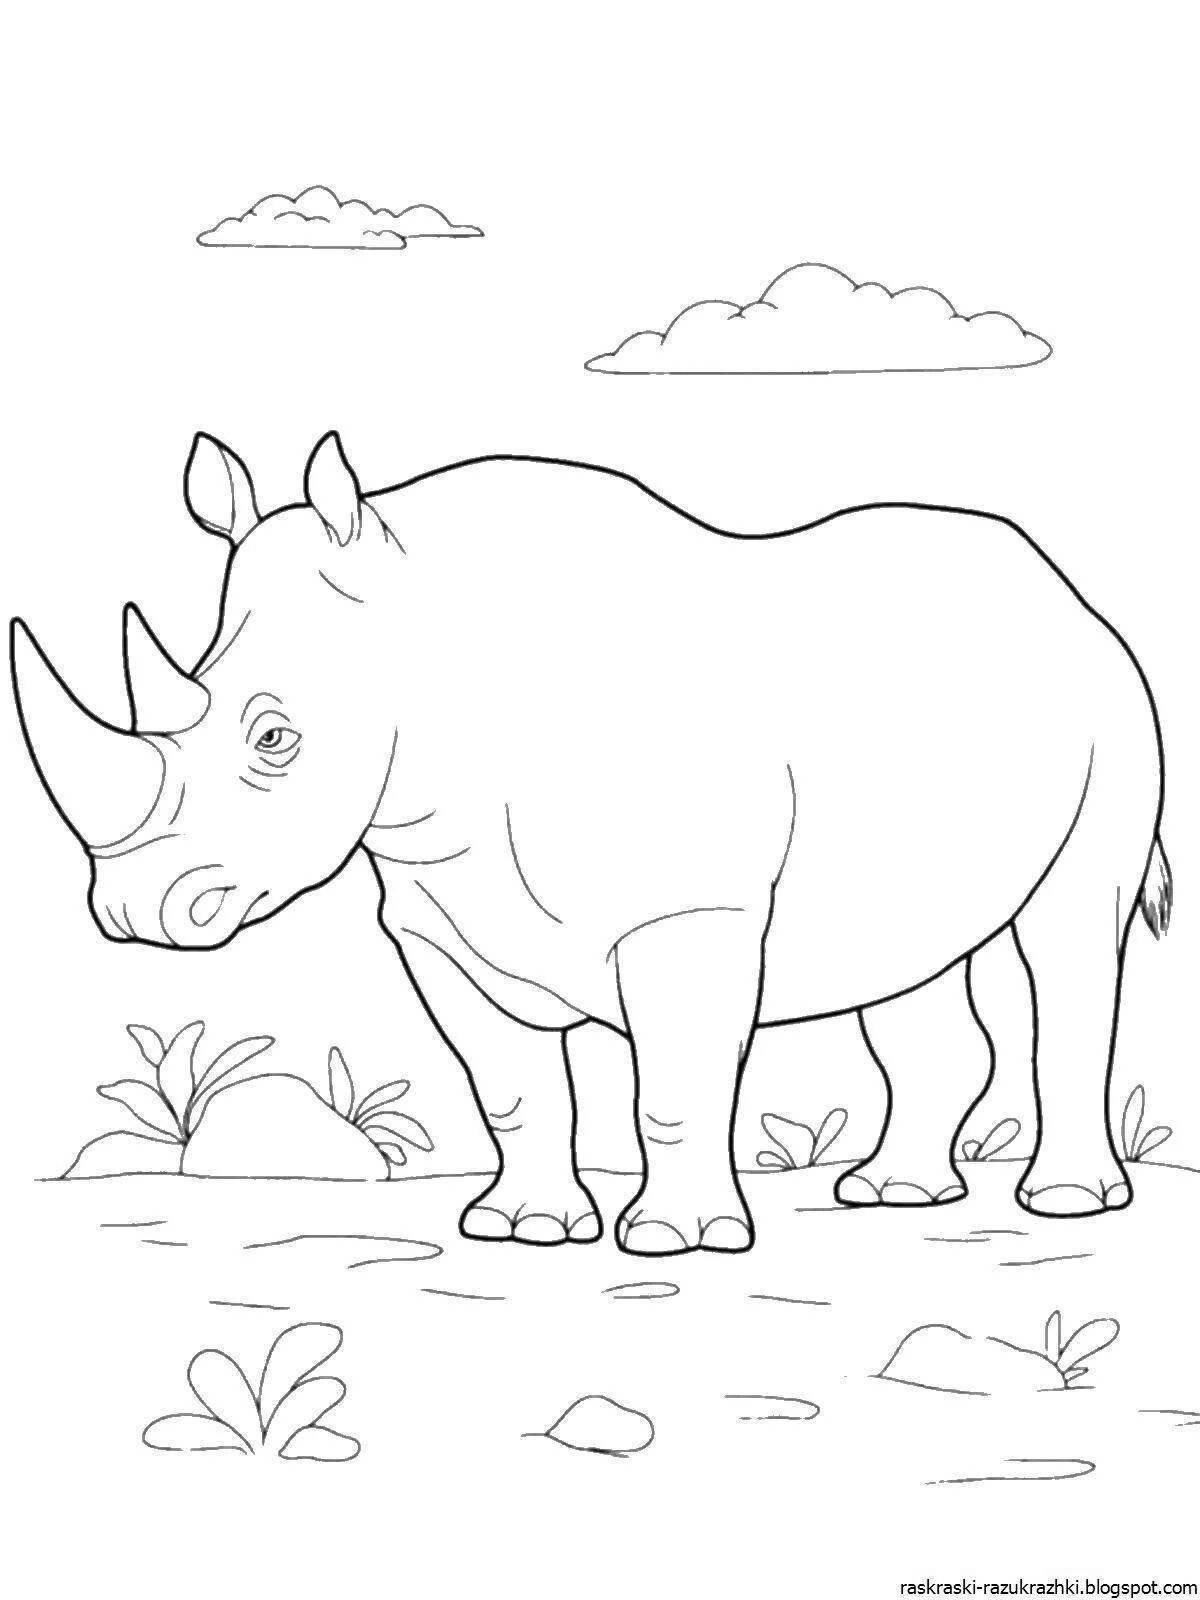 Распечатать раскраску дикие животные. Носорог раскраска. Раскраски животных для детей. Раскраска "Дикие животные". Носорог рисунок.